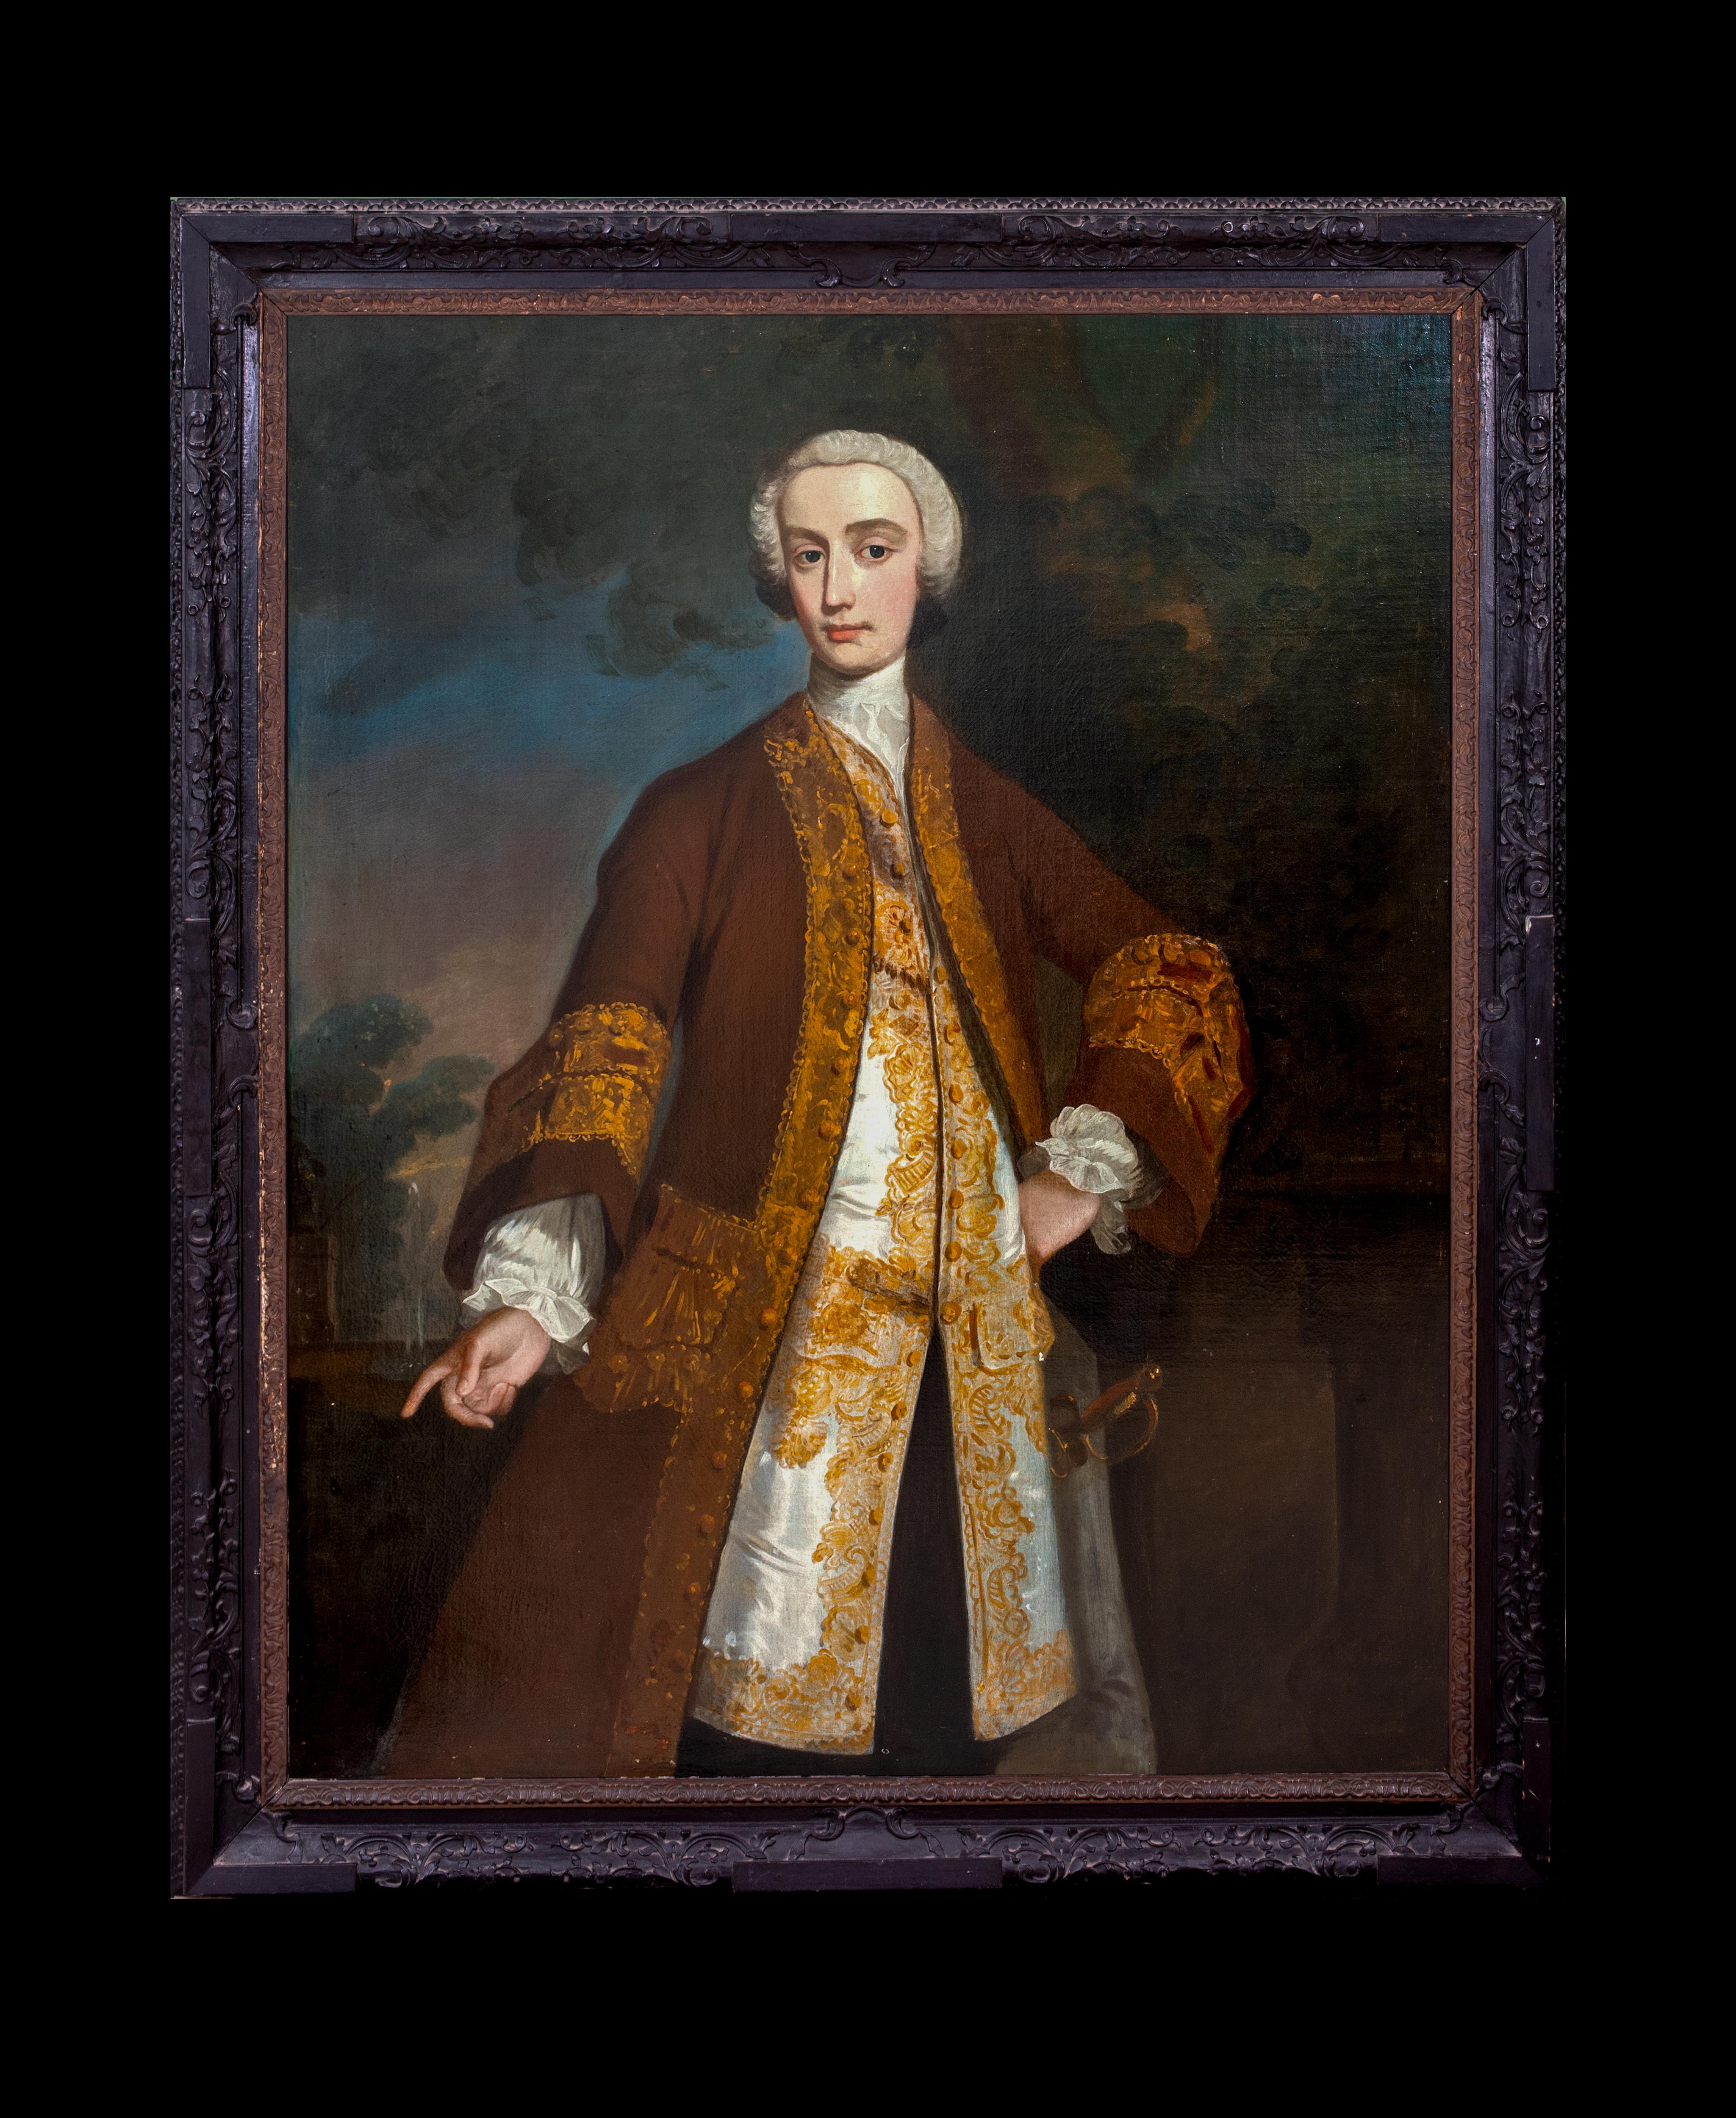 Porträt von 1st Baron Hawkstone, Sir Rowland Hill, Tory MP für Lichfield, Porträt  – Painting von Charles Jervas